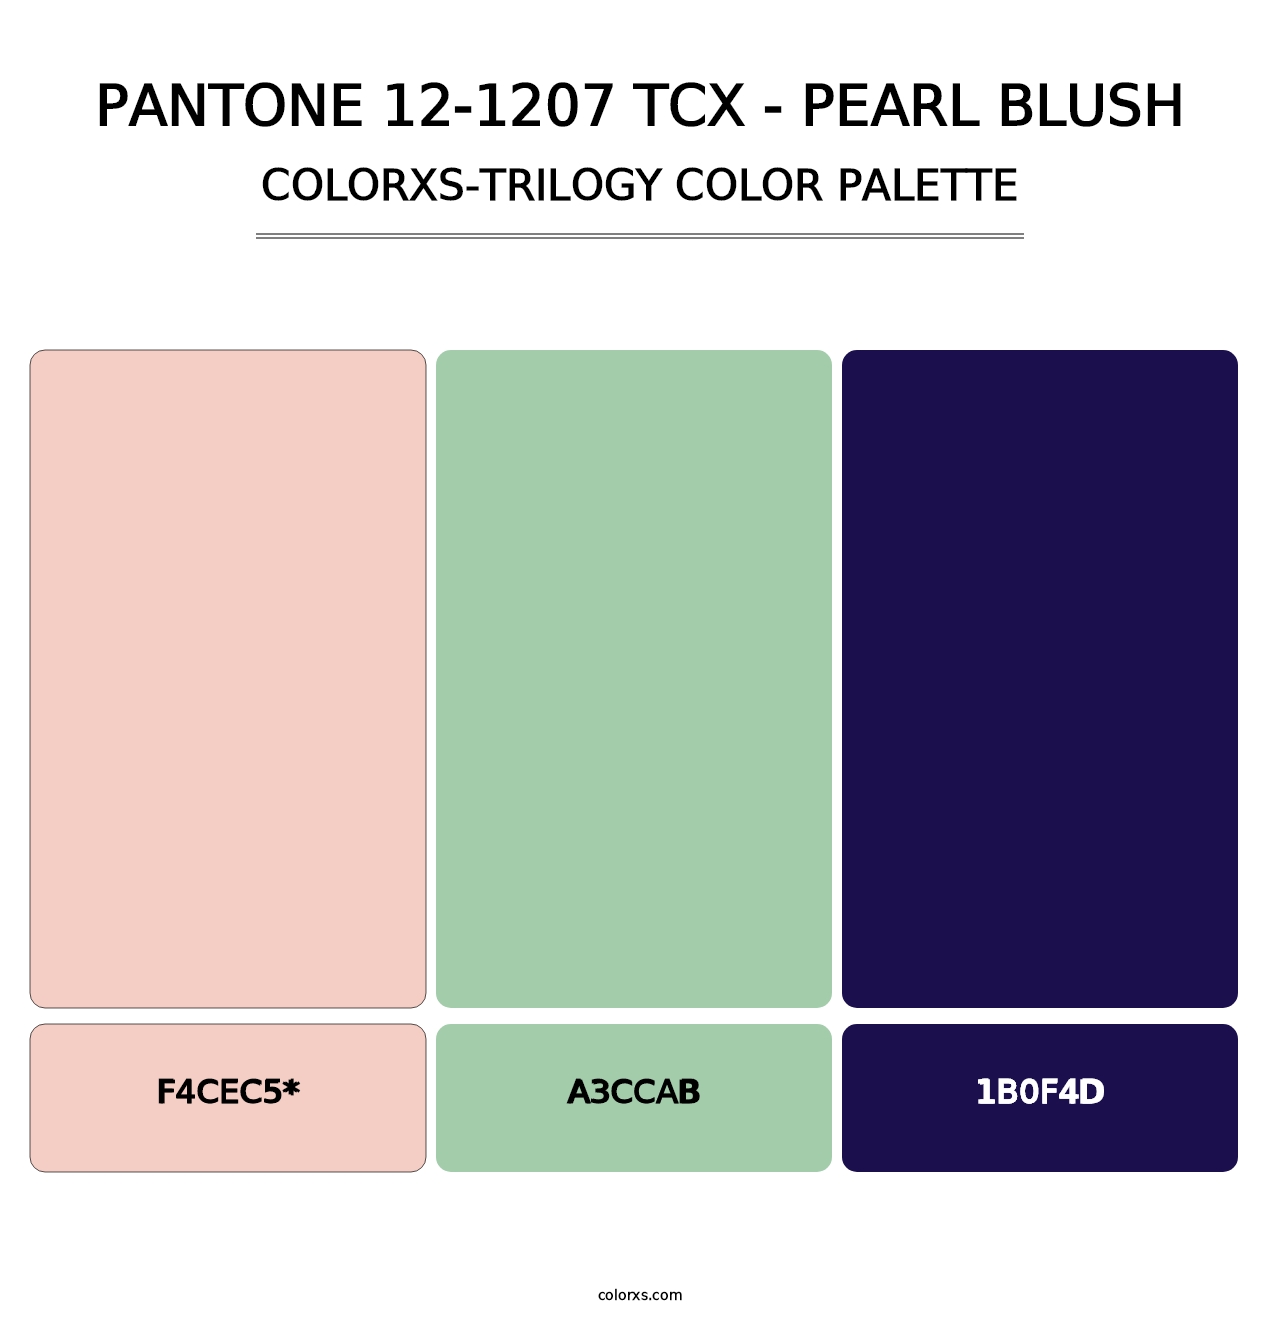 PANTONE 12-1207 TCX - Pearl Blush - Colorxs Trilogy Palette